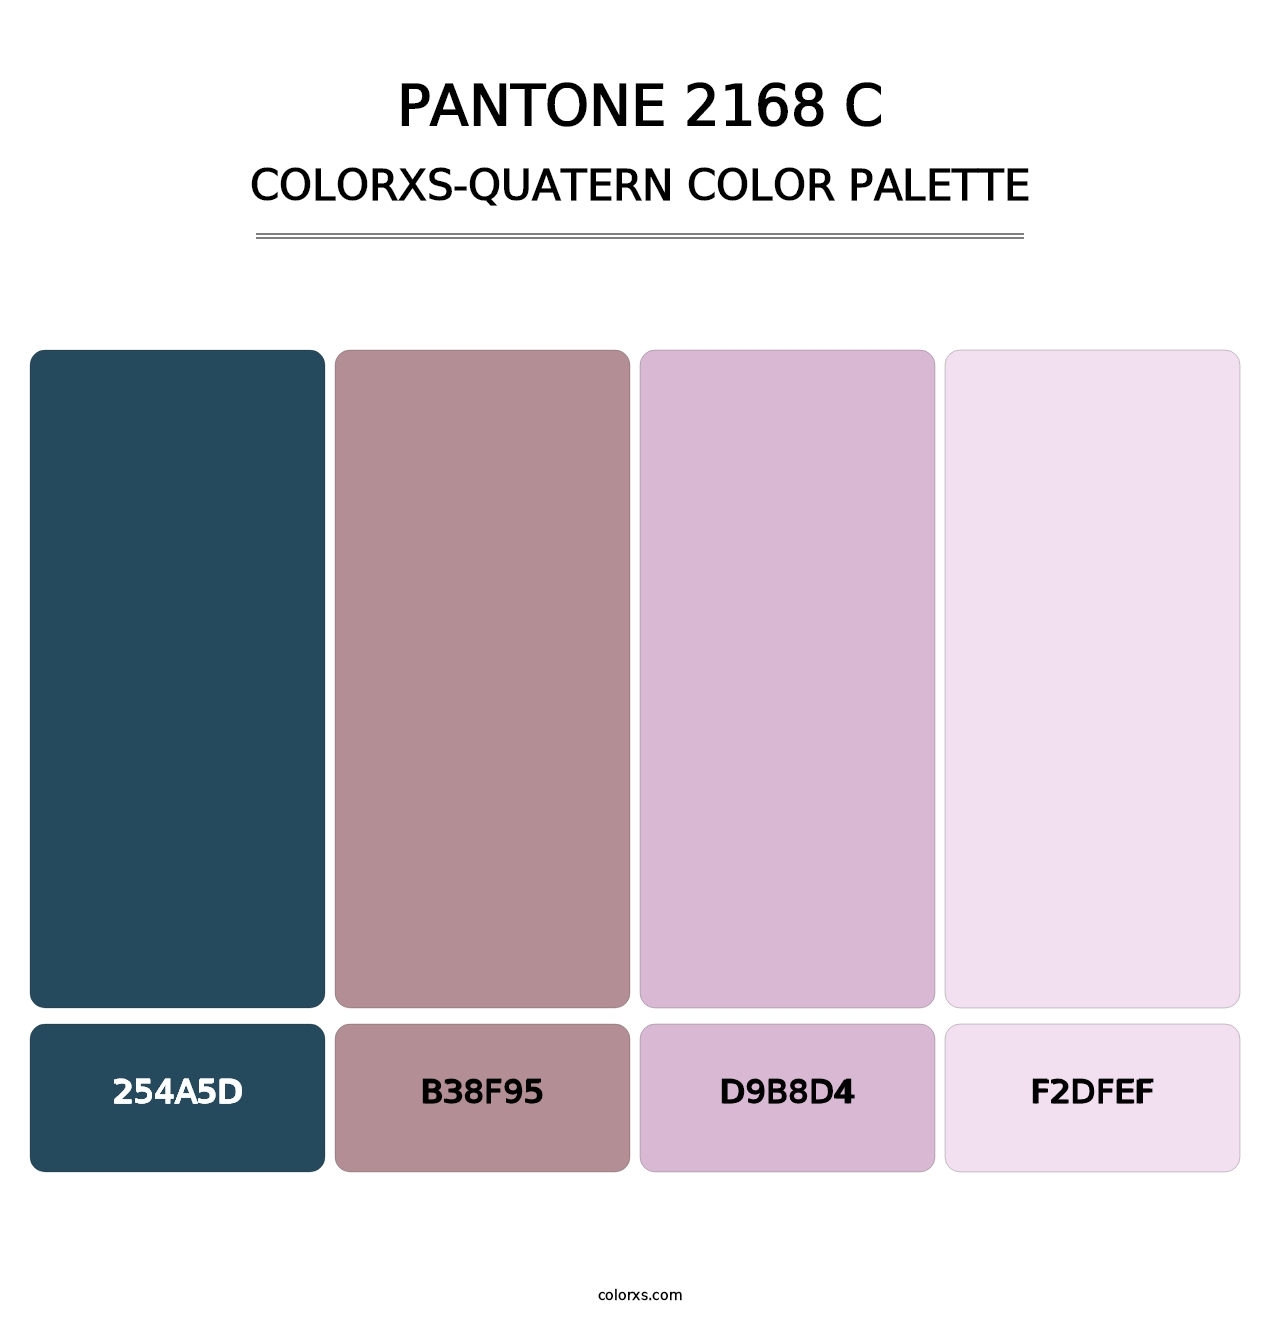 PANTONE 2168 C - Colorxs Quatern Palette